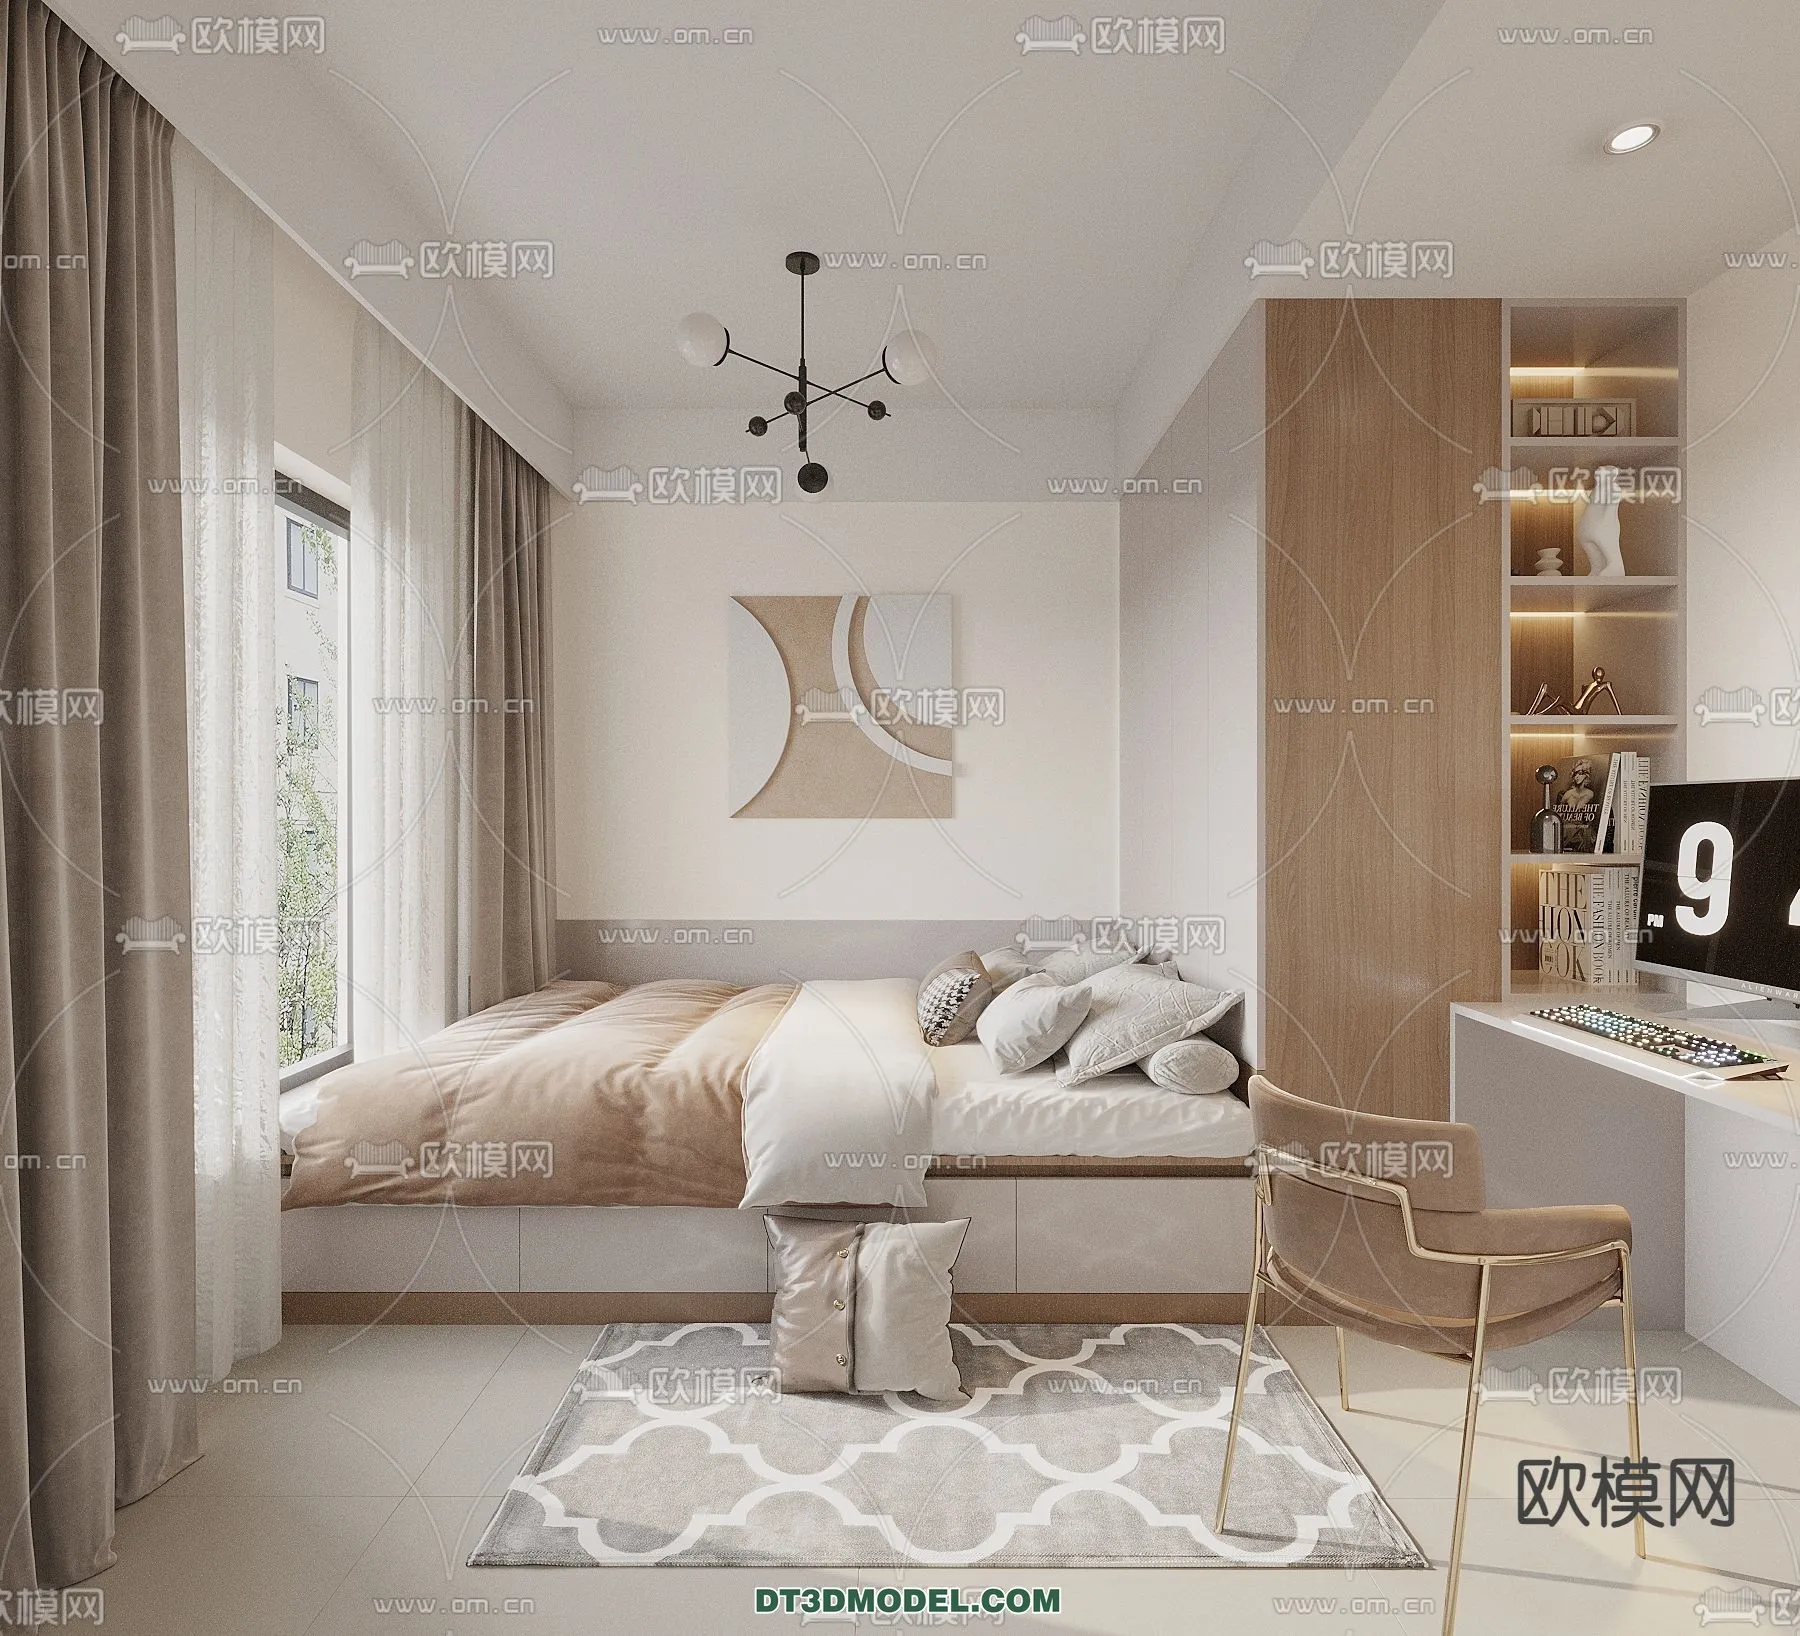 Tatami Bedroom – Japan Bedroom – 3D Scene – 064